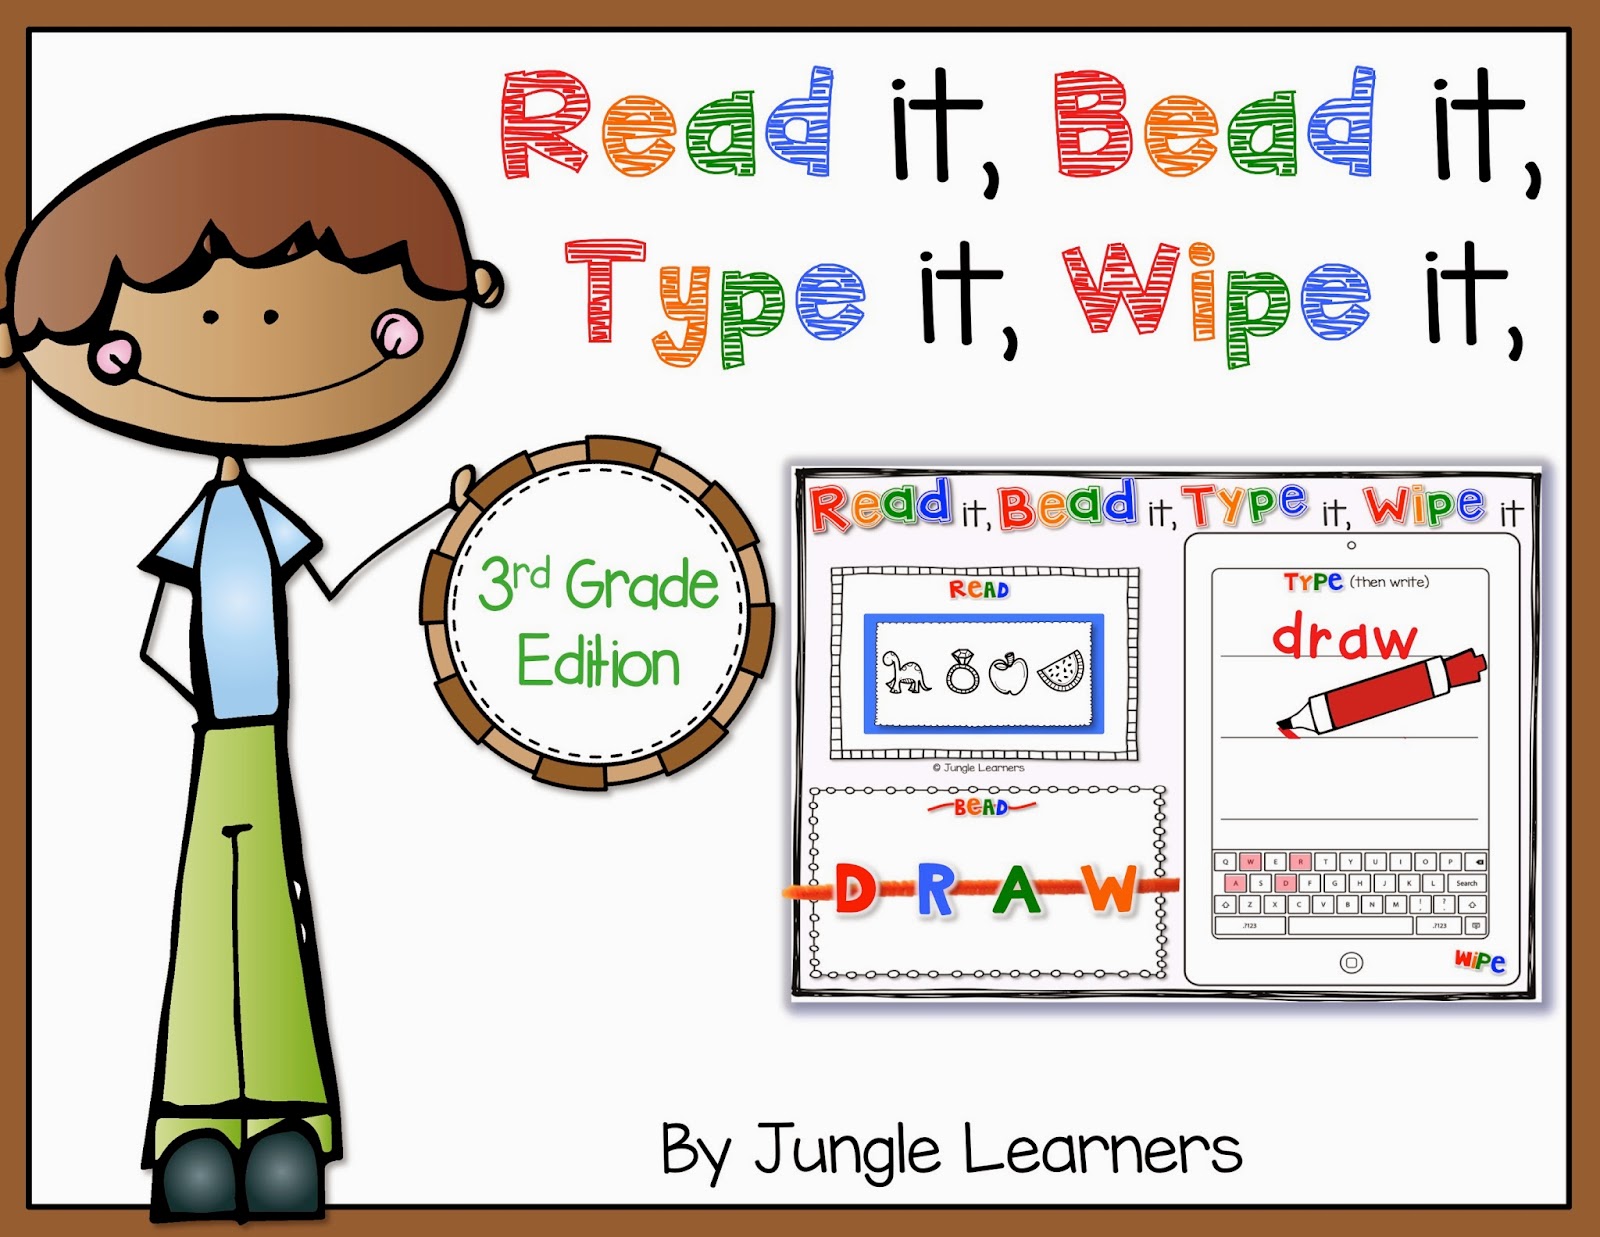 Read it, Bead it, Type it, Wipe it [3rd Grade Edition]